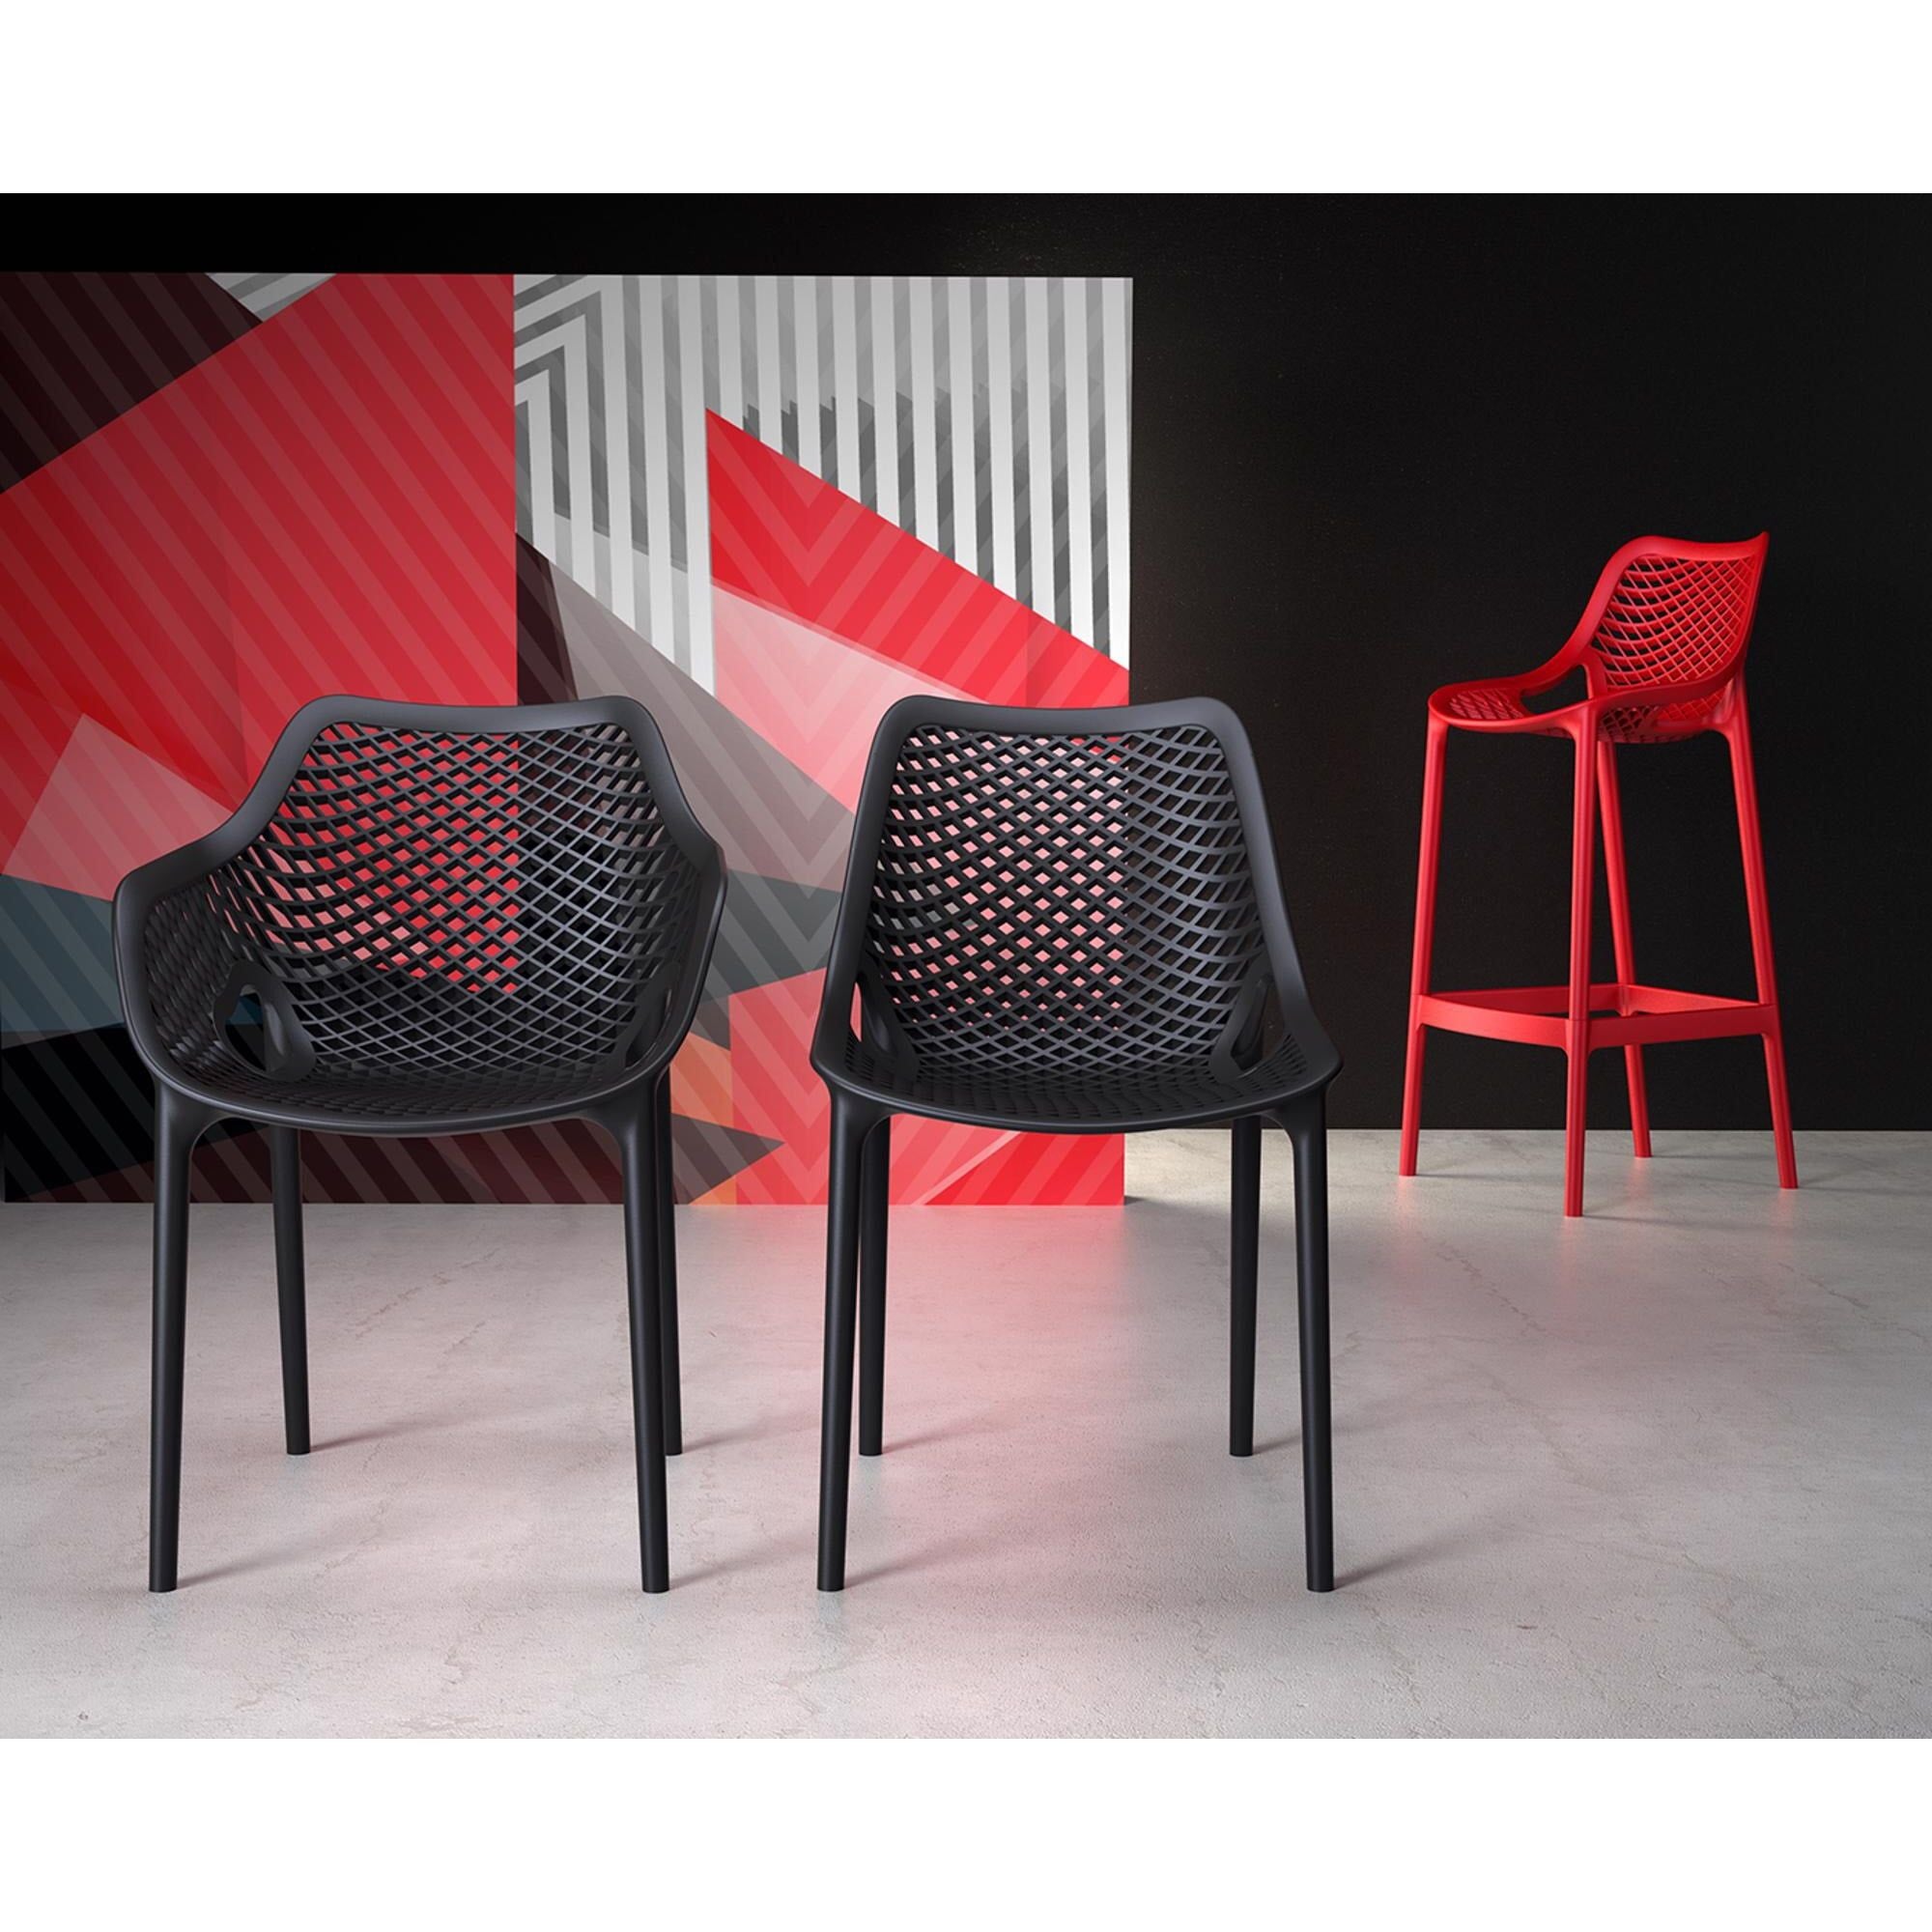 Garbar lattice medium stool inside, red outside